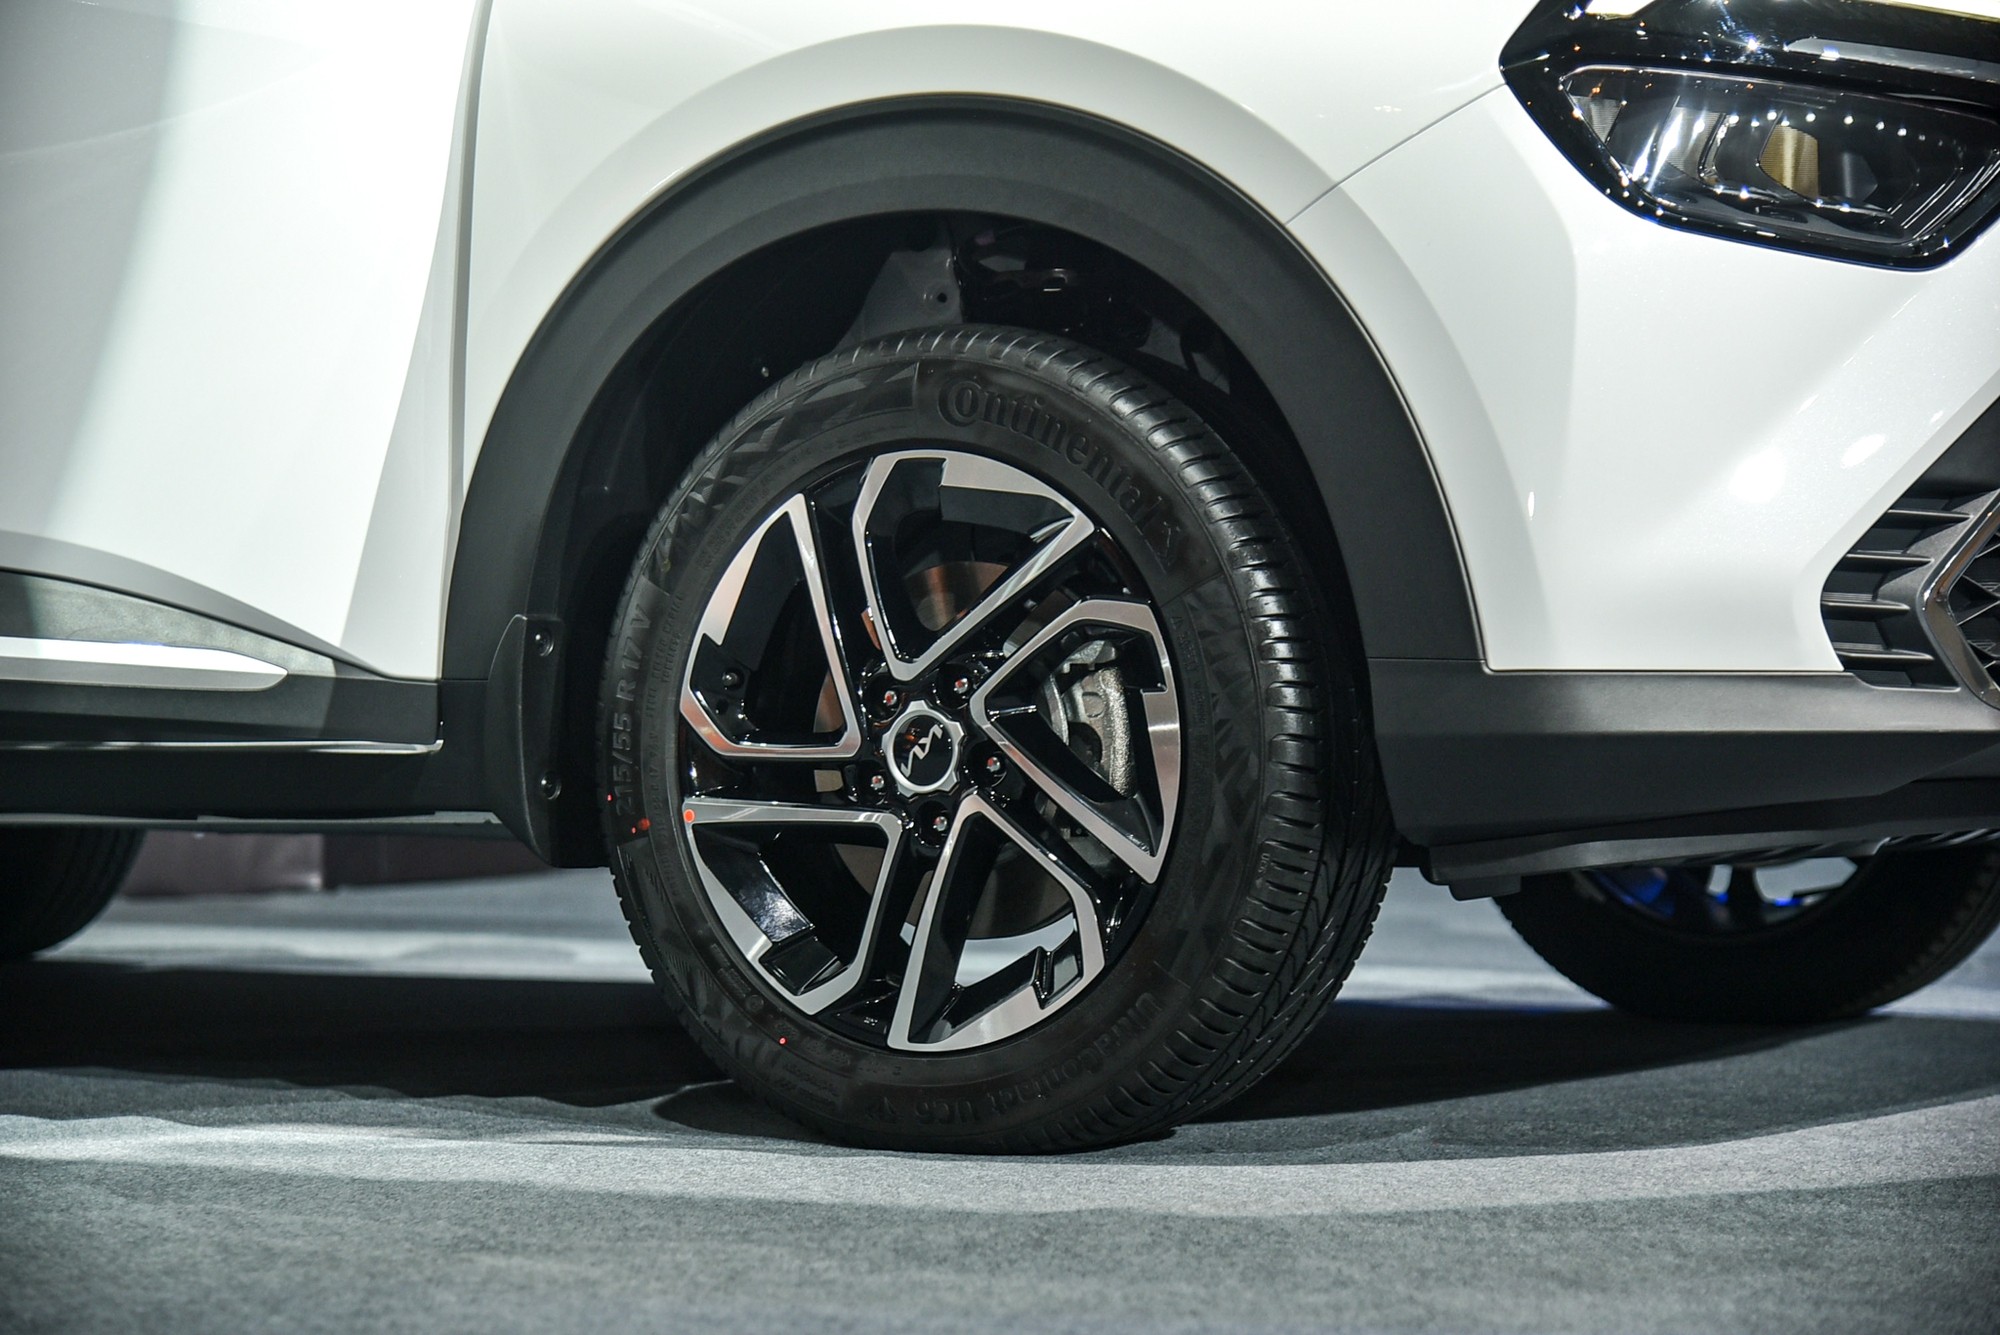 Chi tiết Kia Carens bản chiến lược giá 699 triệu đồng: Co kéo trang bị để có giá cạnh tranh Veloz, Xpander - Ảnh 5.